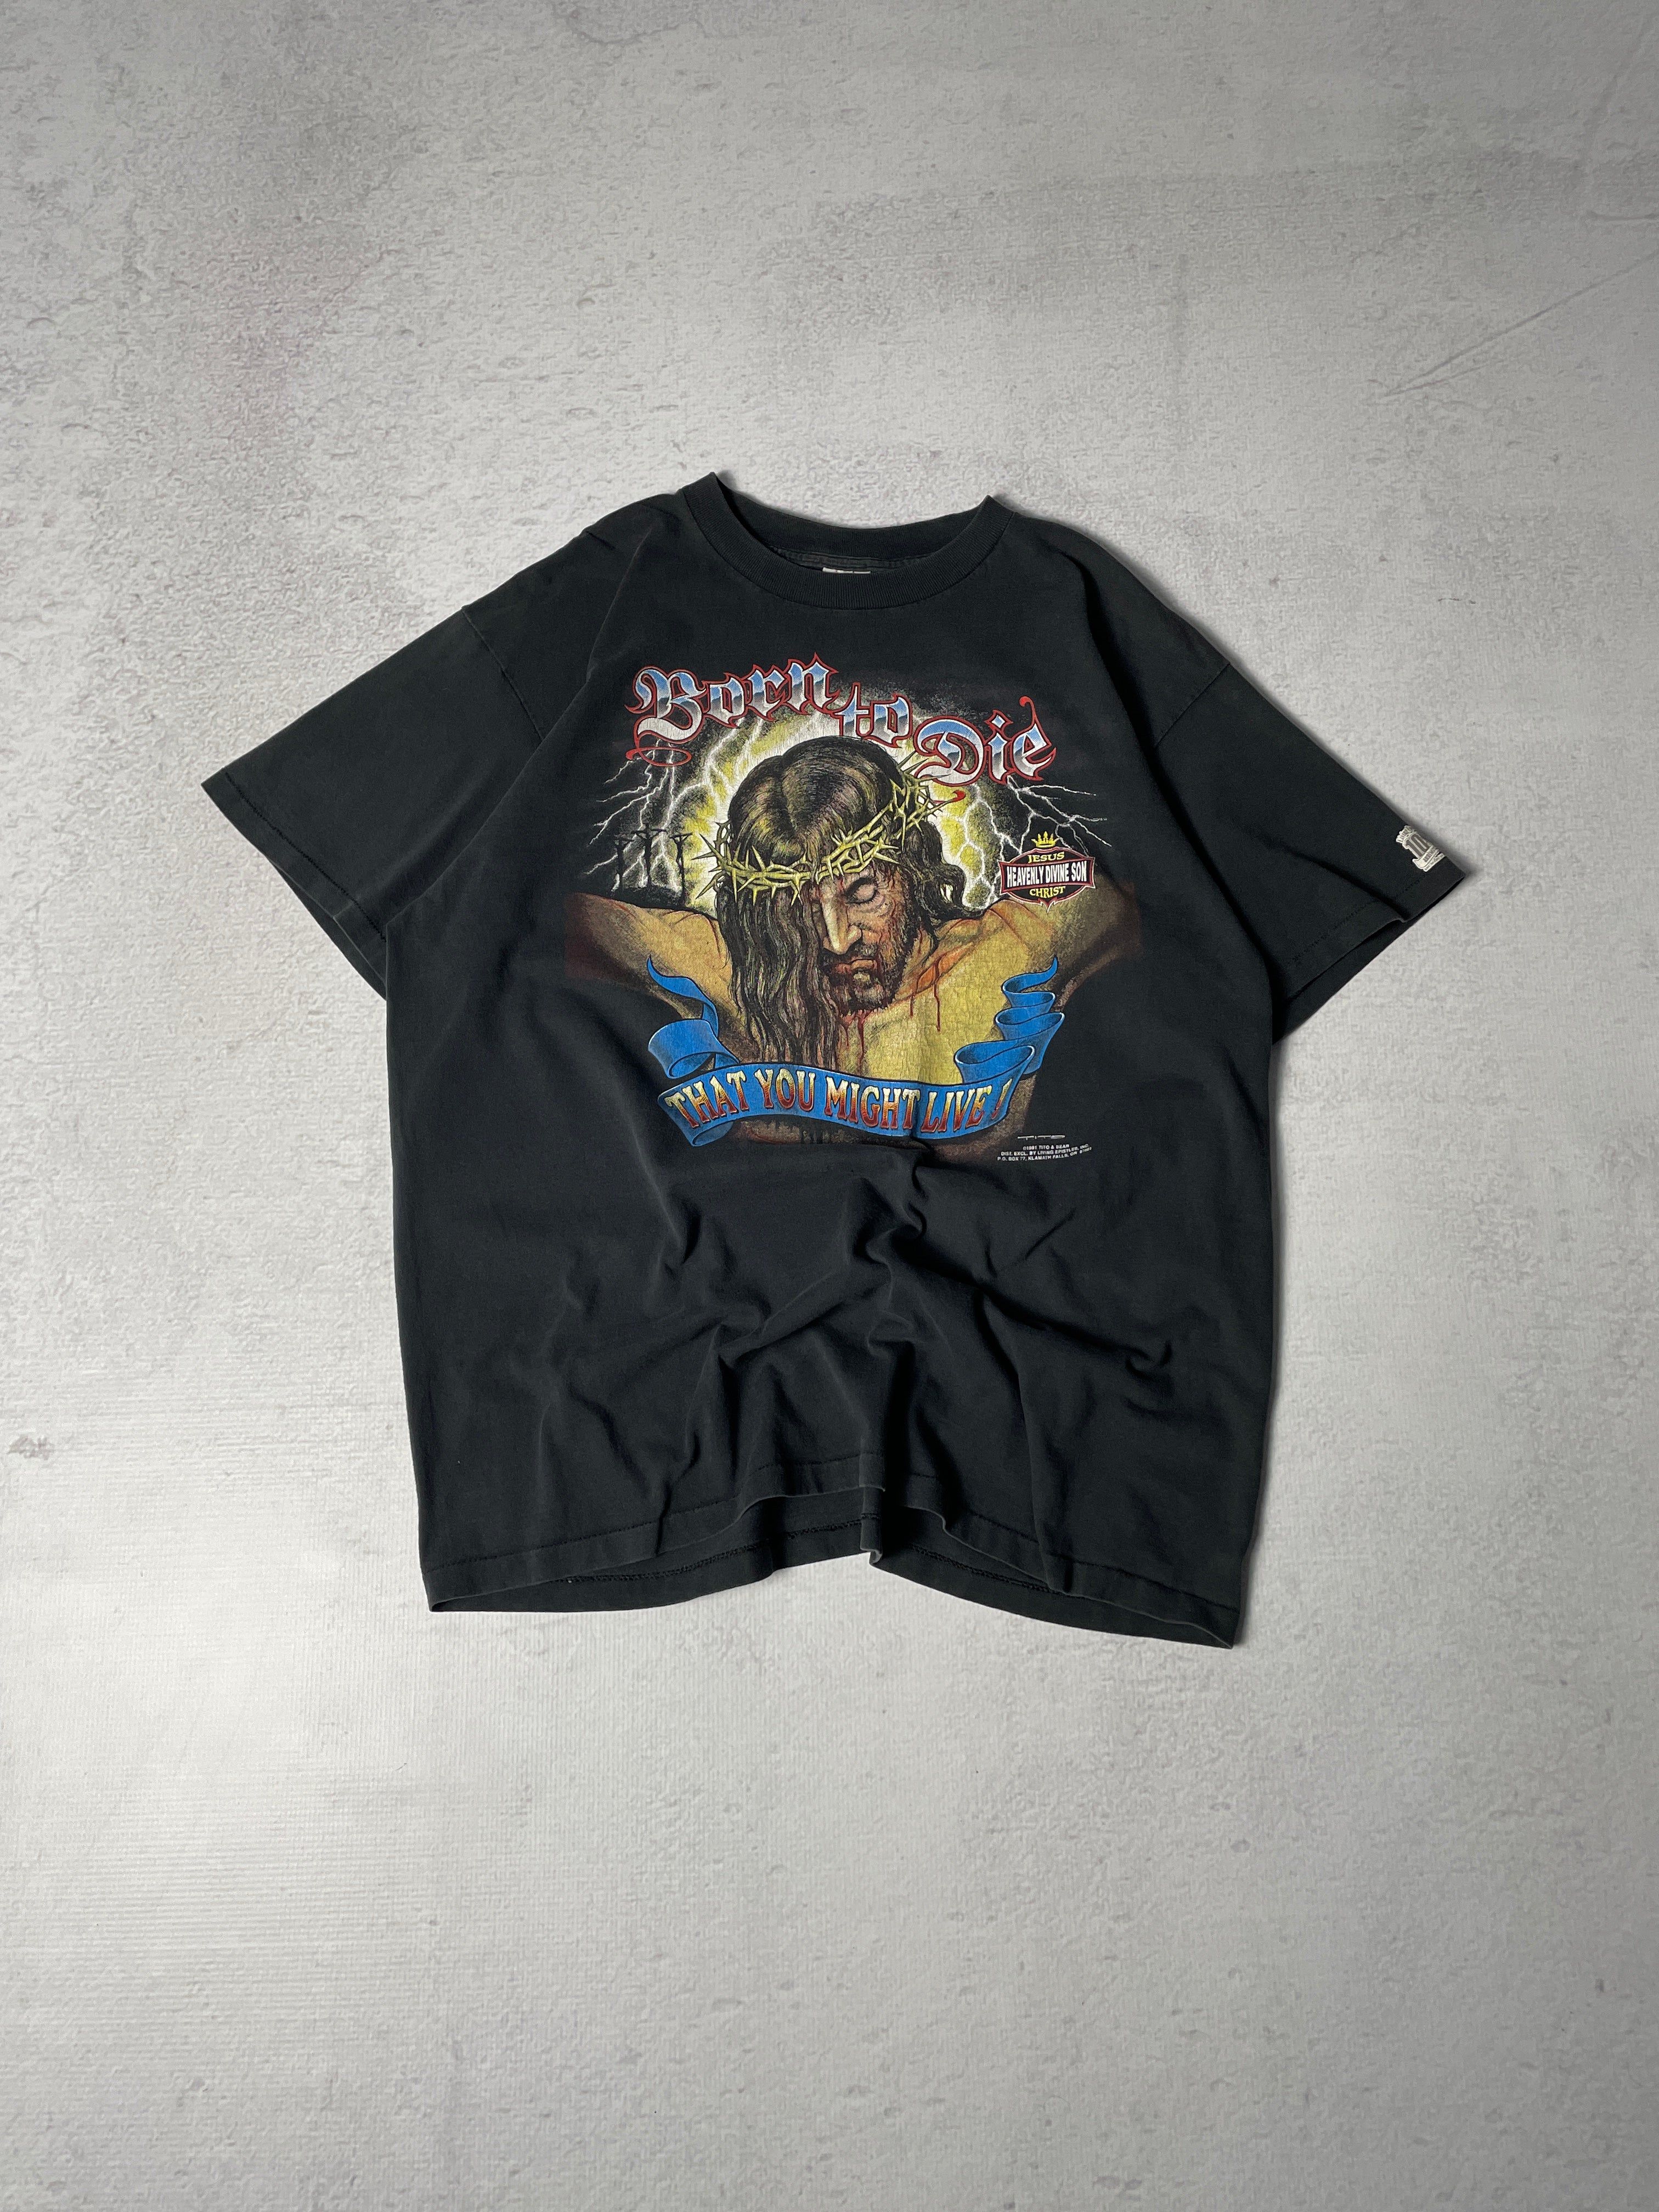 Vintage 1991 Born to Die Graphic T-Shirt - Men's XL